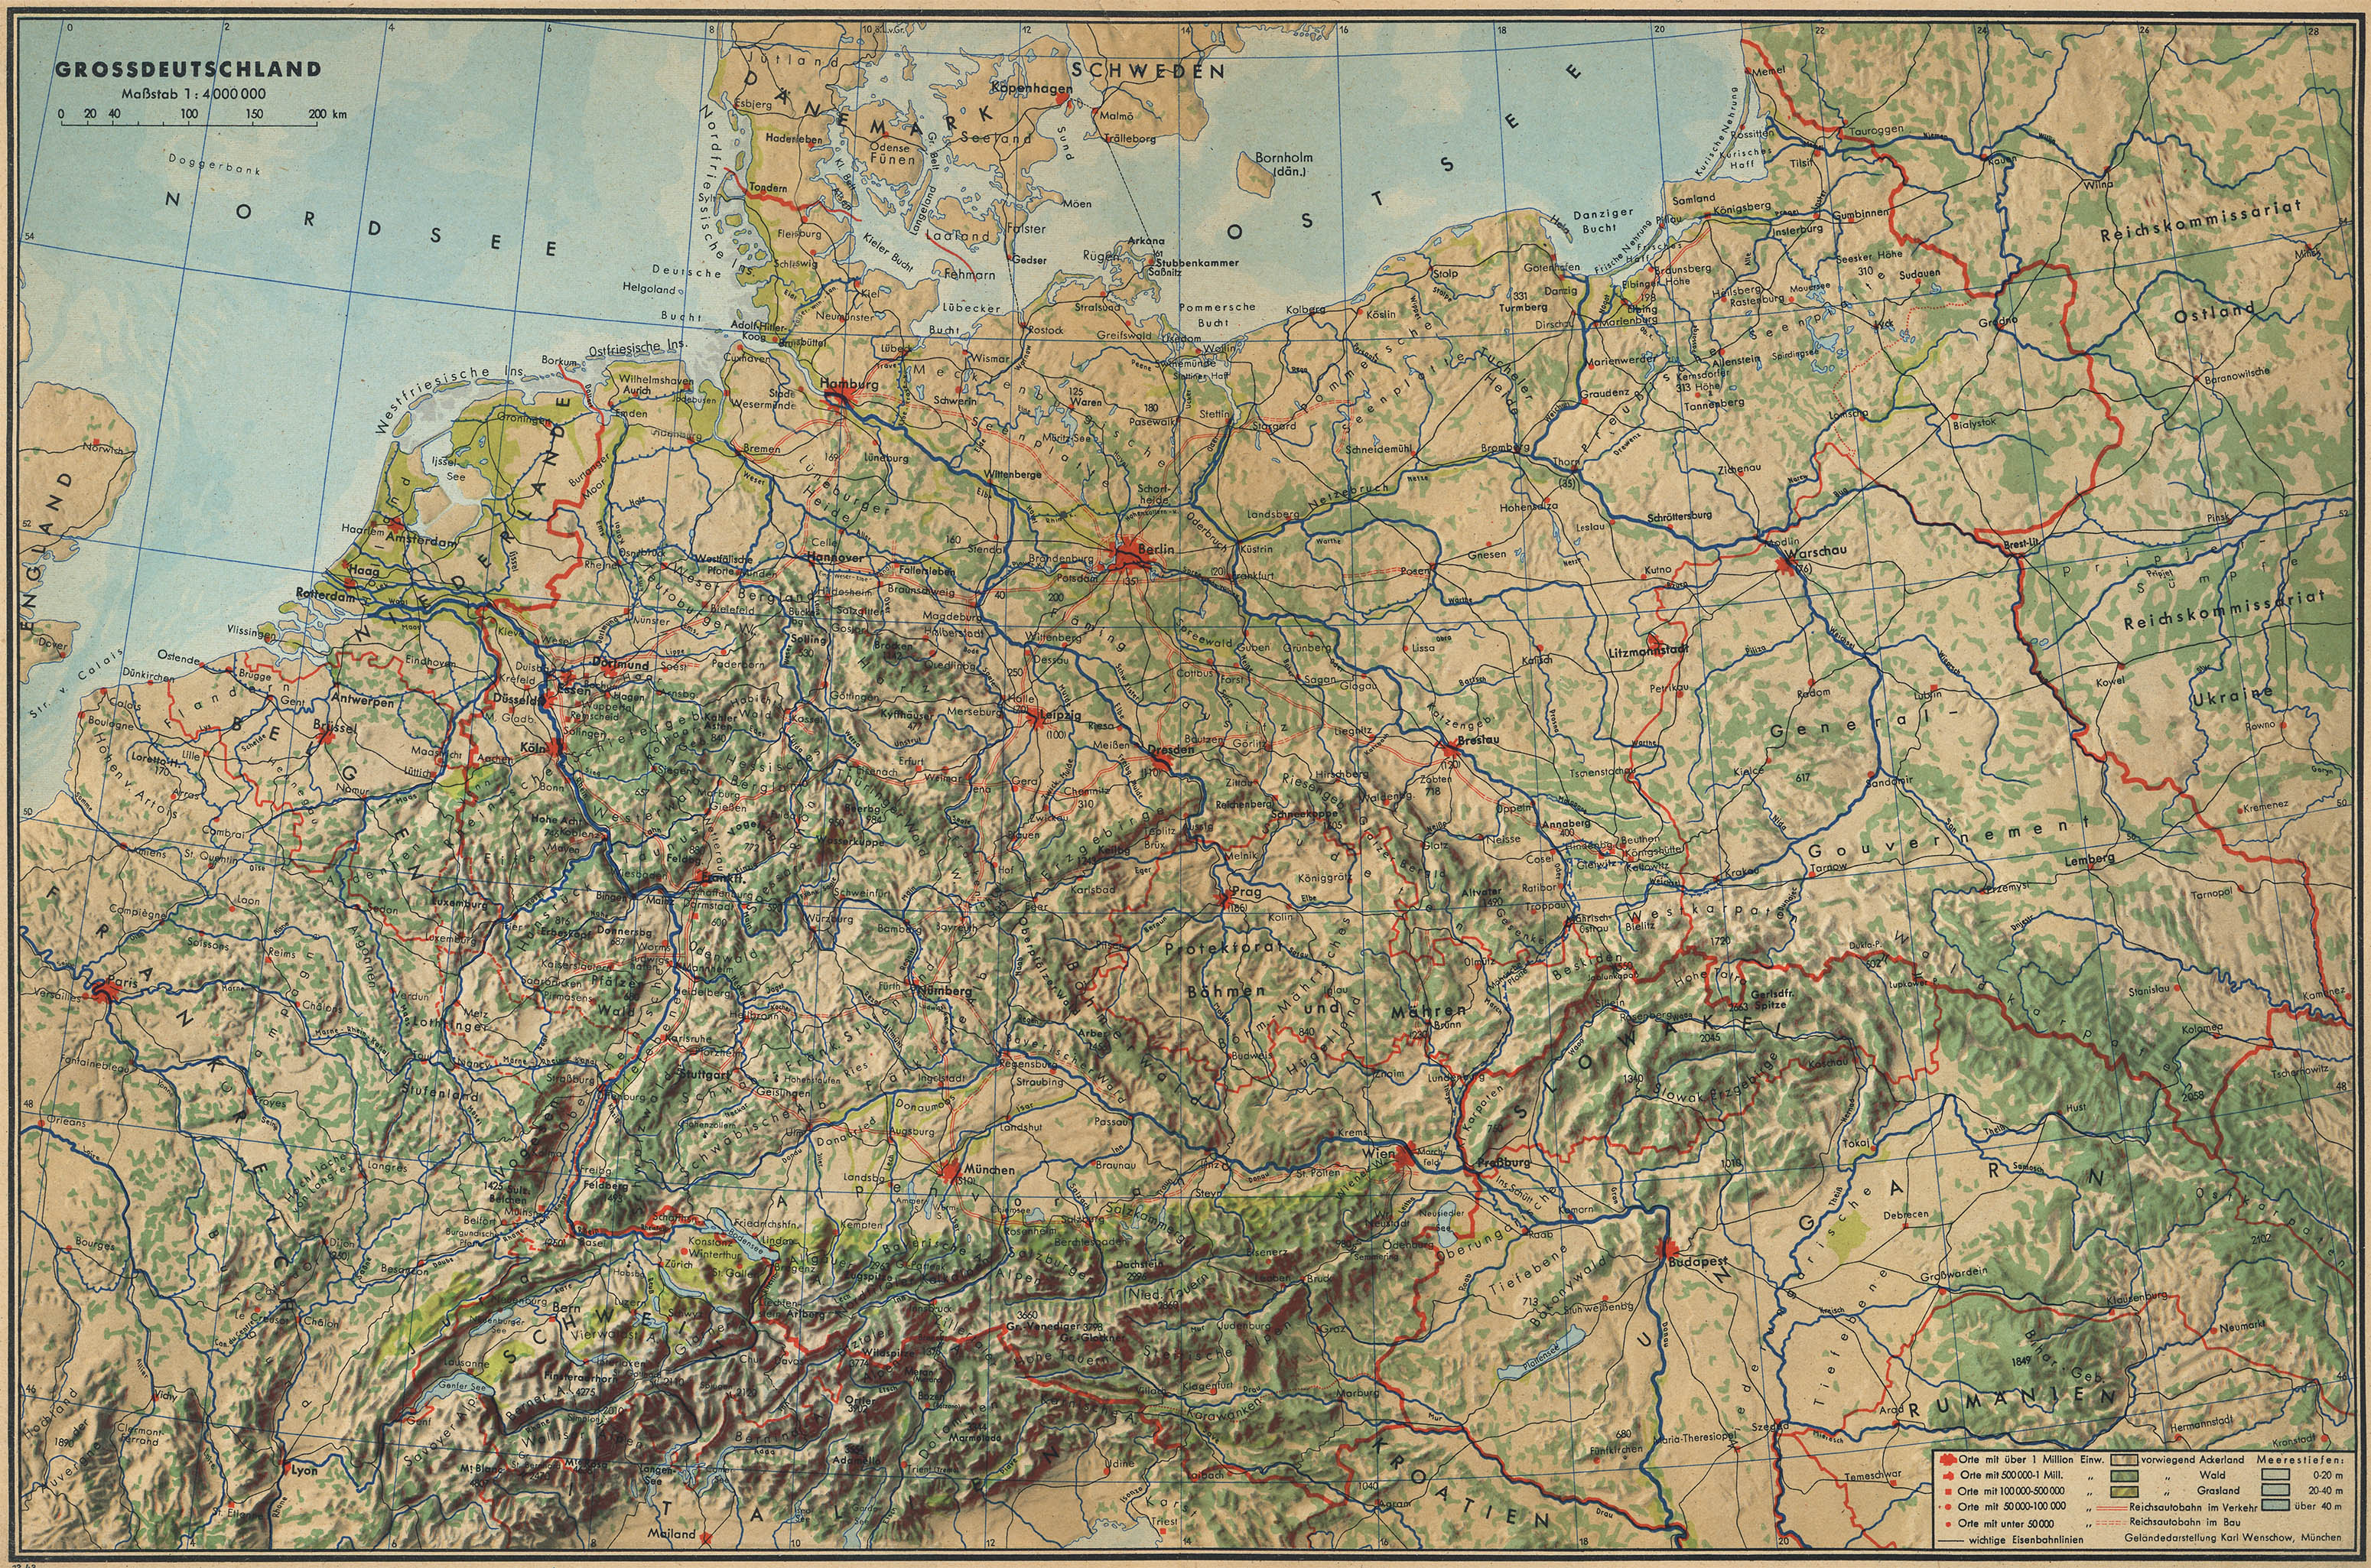 Grossdeutschland Map